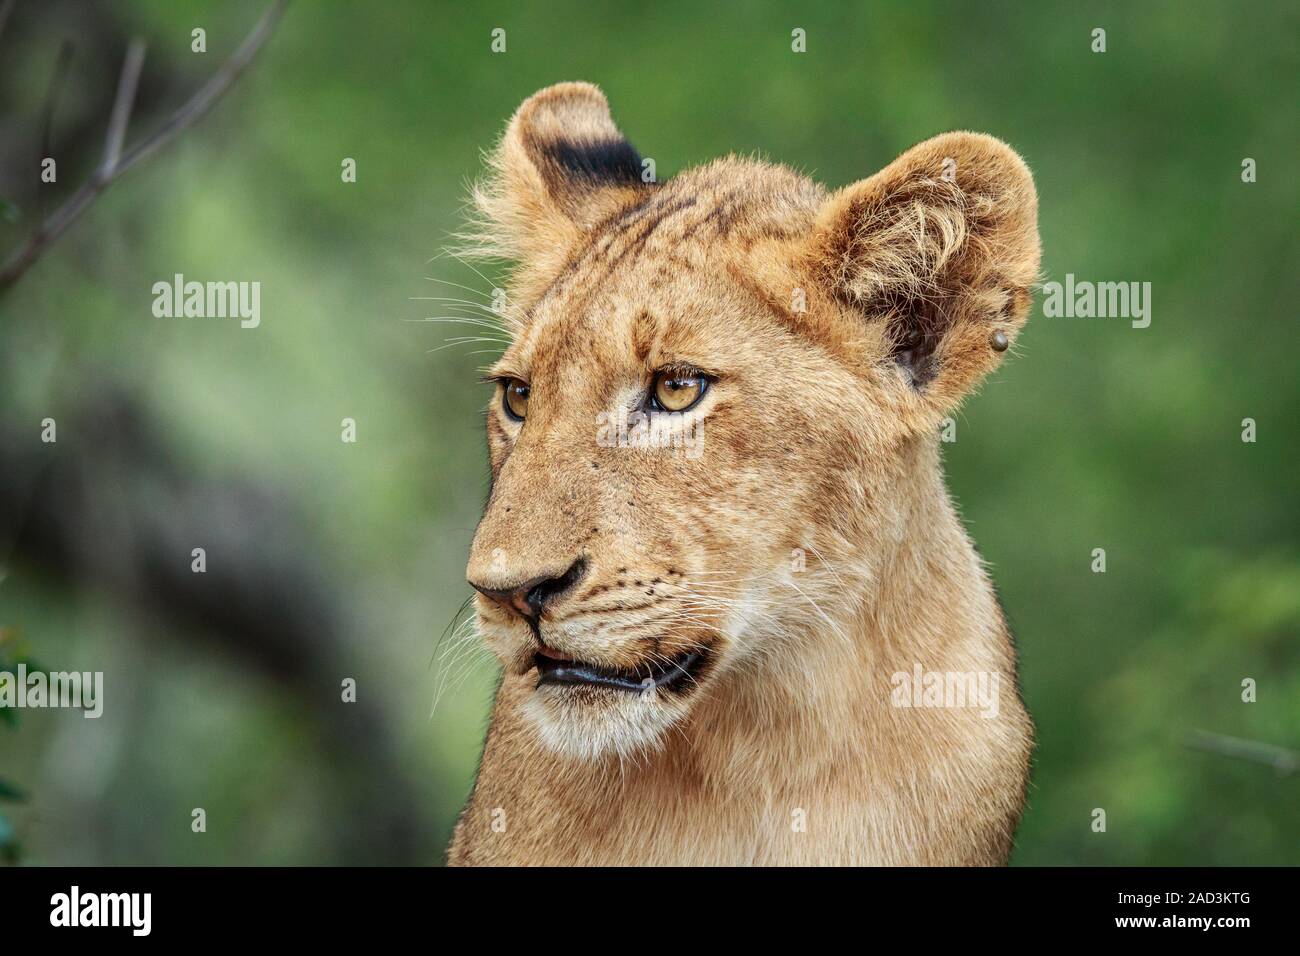 Seite Profil eines Lion Cub. Stockfoto